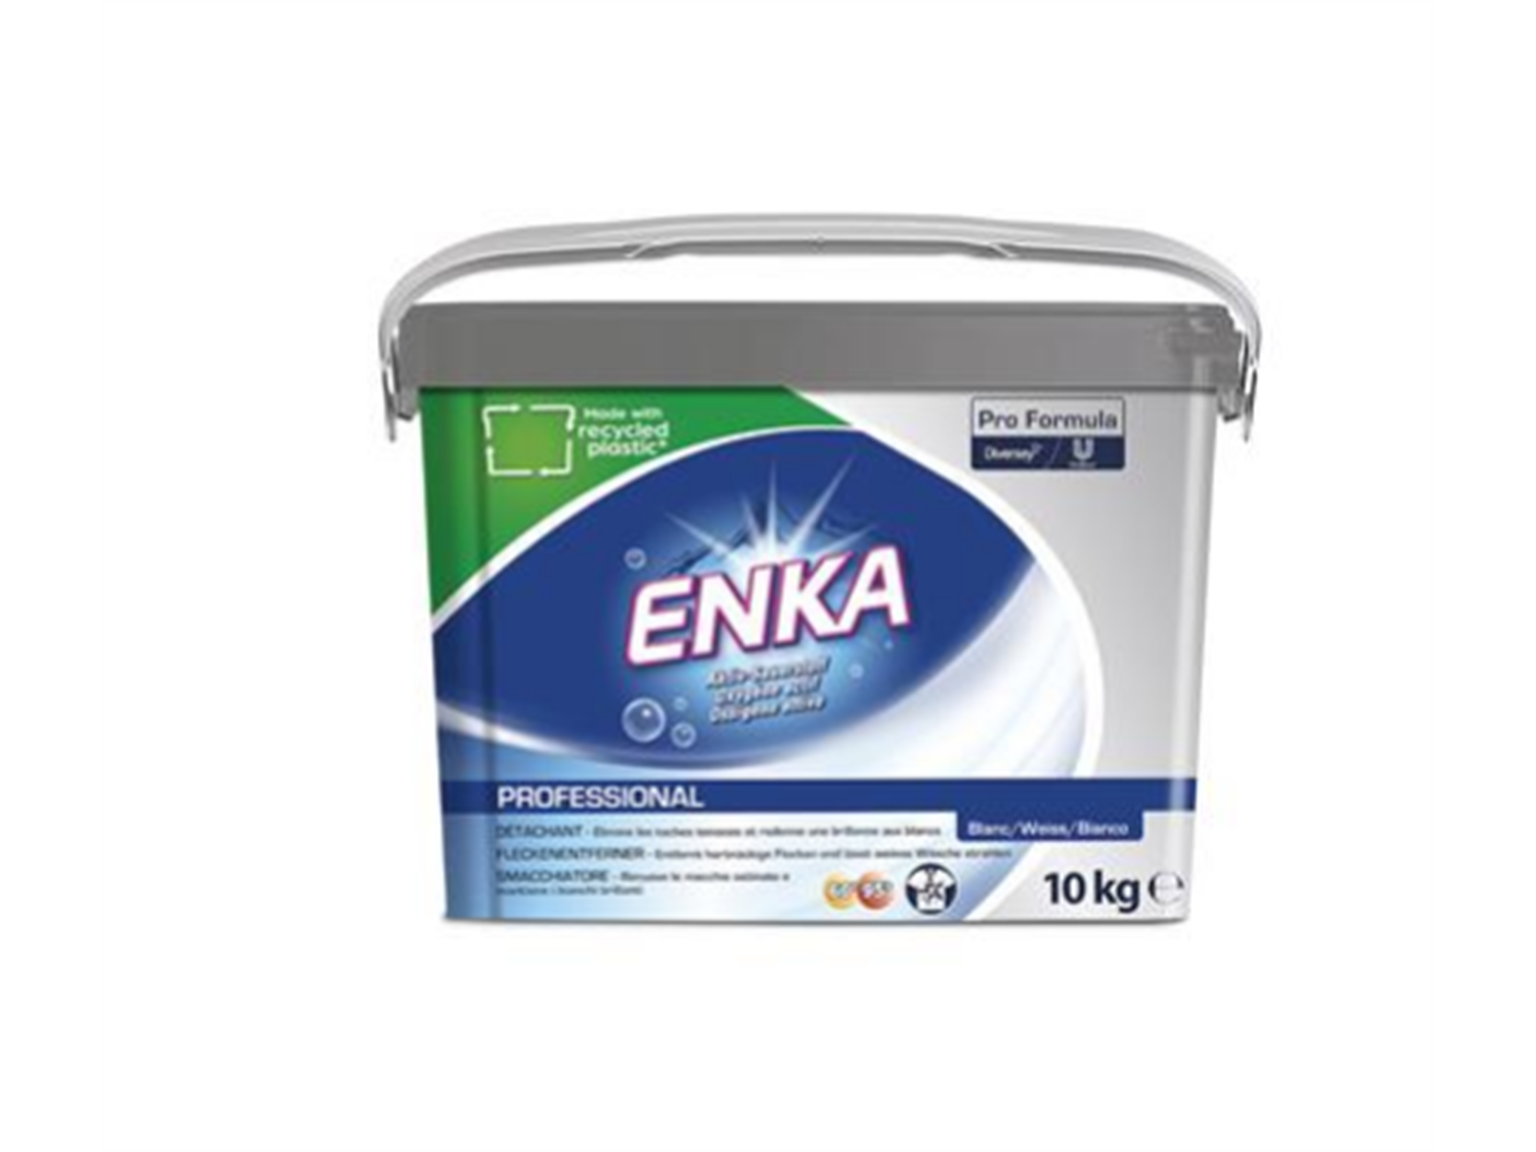 DIVERSEY SAUERSTOFFBLEICHMITTEL ENKA  Enka Pro Formula Weiss 10kg